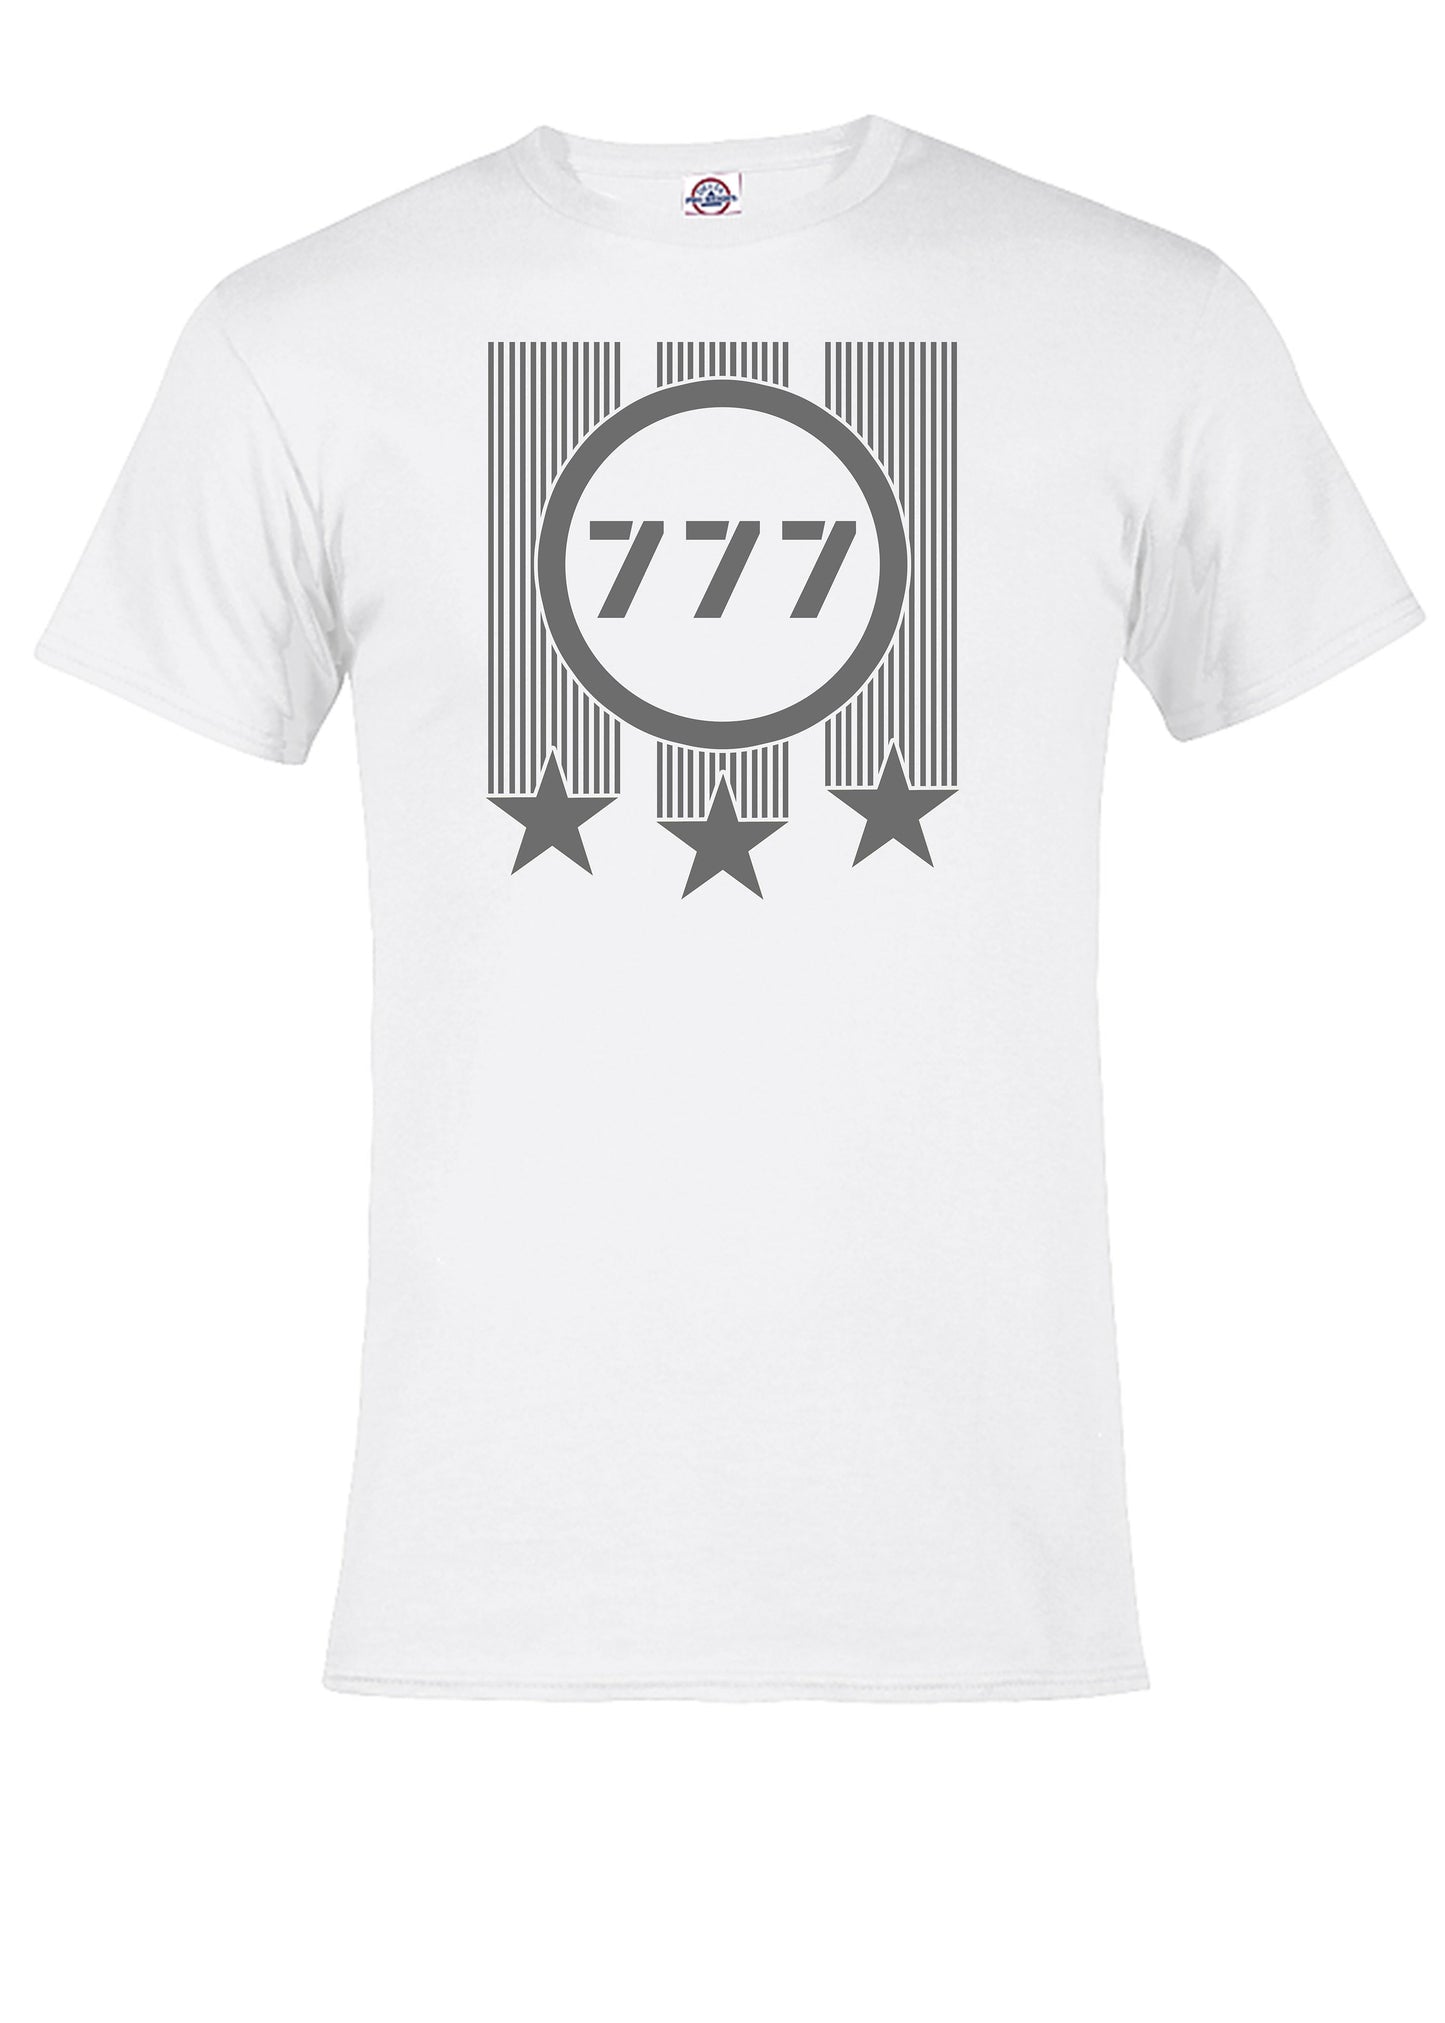 777 Spirit T Shirt